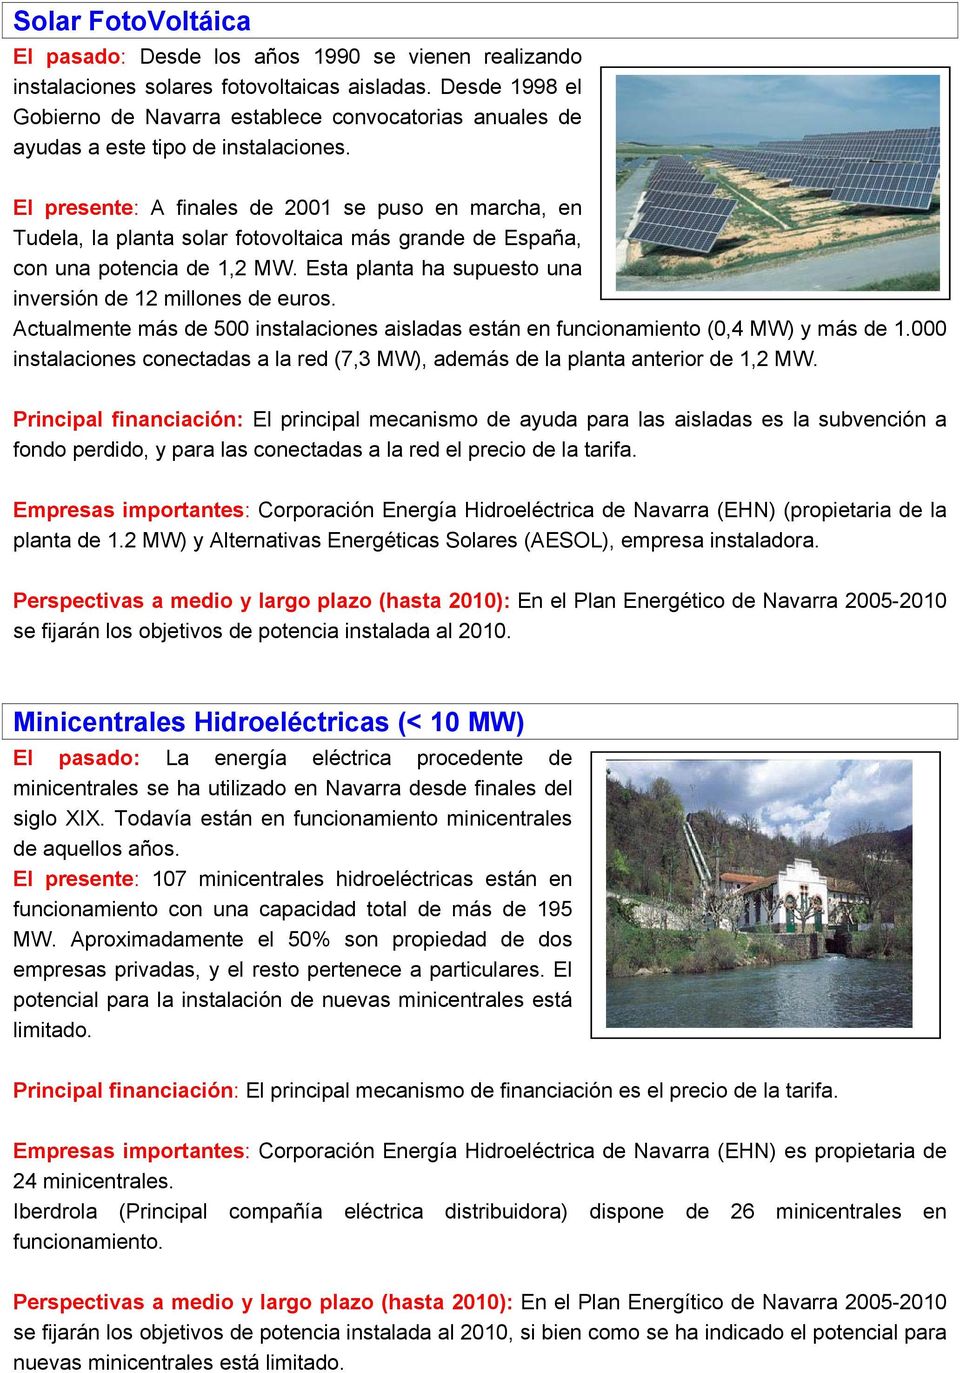 El presente: A finales de 2001 se puso en marcha, en Tudela, la planta solar fotovoltaica más grande de España, con una potencia de 1,2 MW.